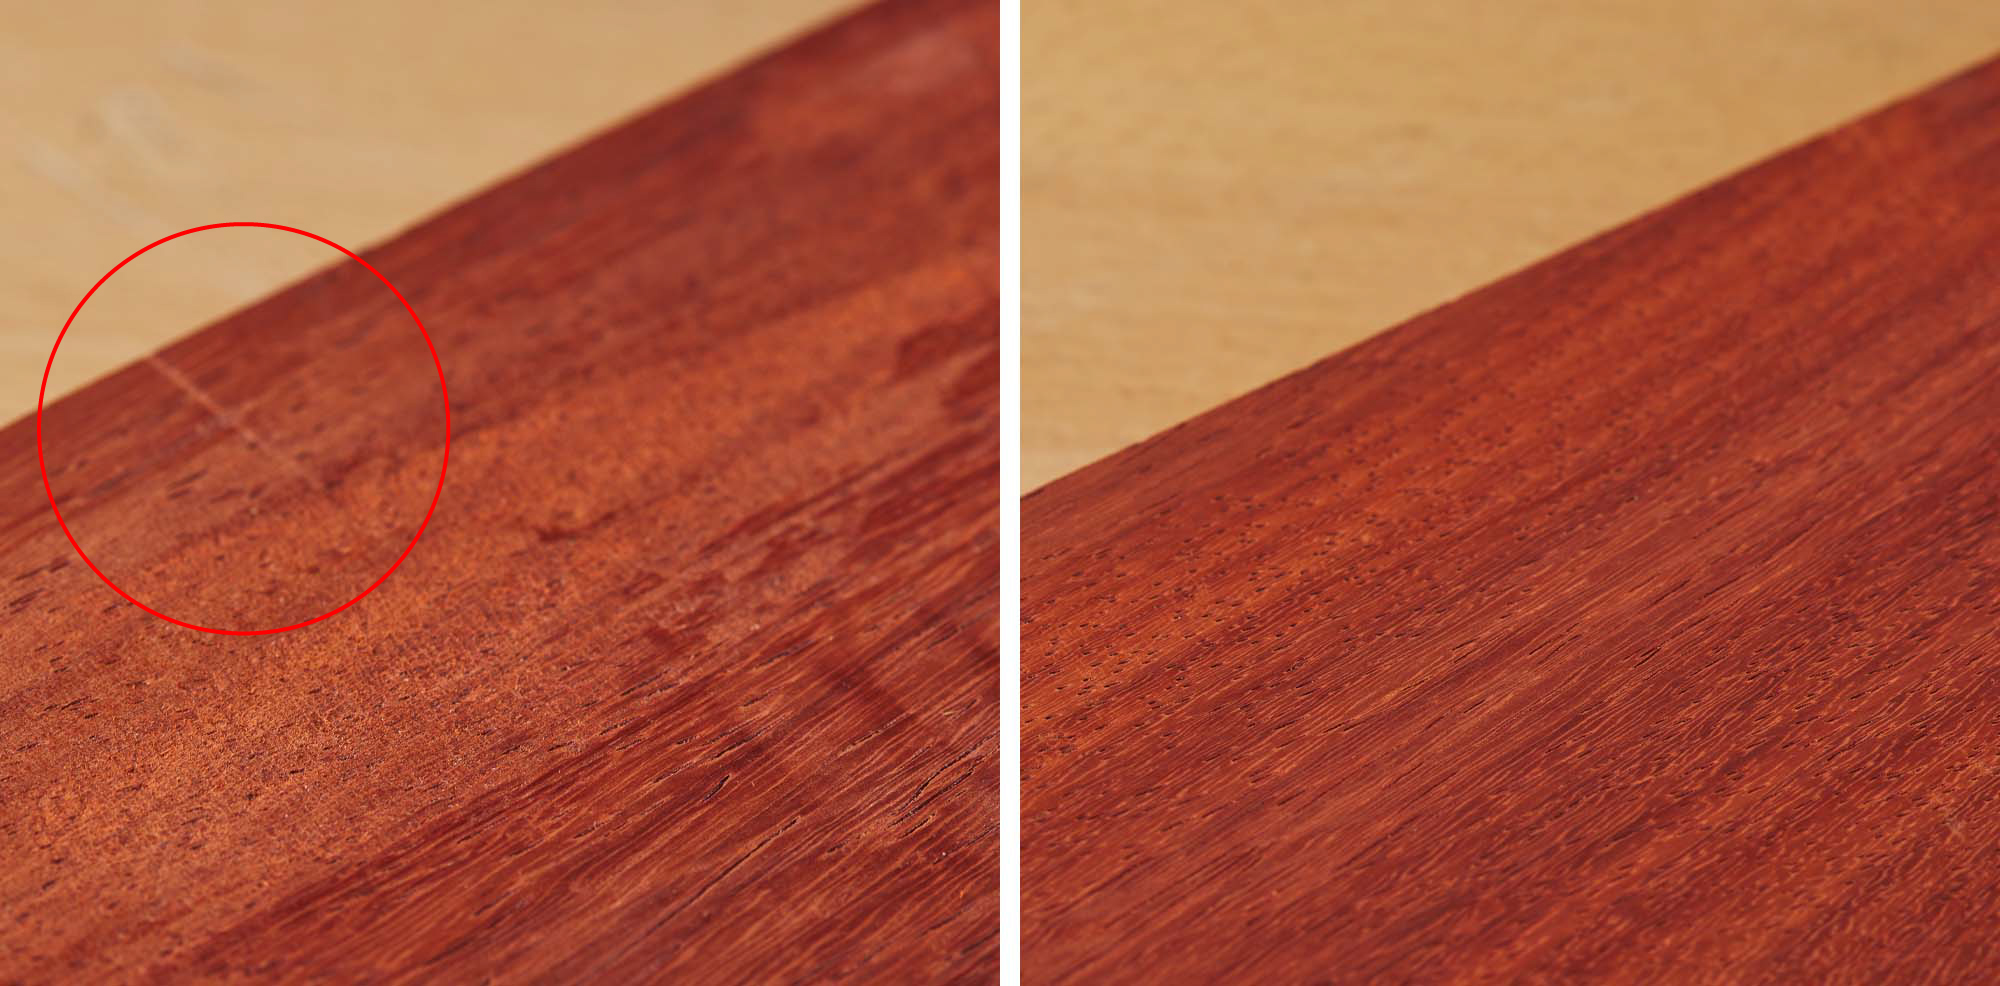 Image de gauche : Surface de bois présentant des arrachements. Image de droite : Surface de bois lisse et sans arrachements.